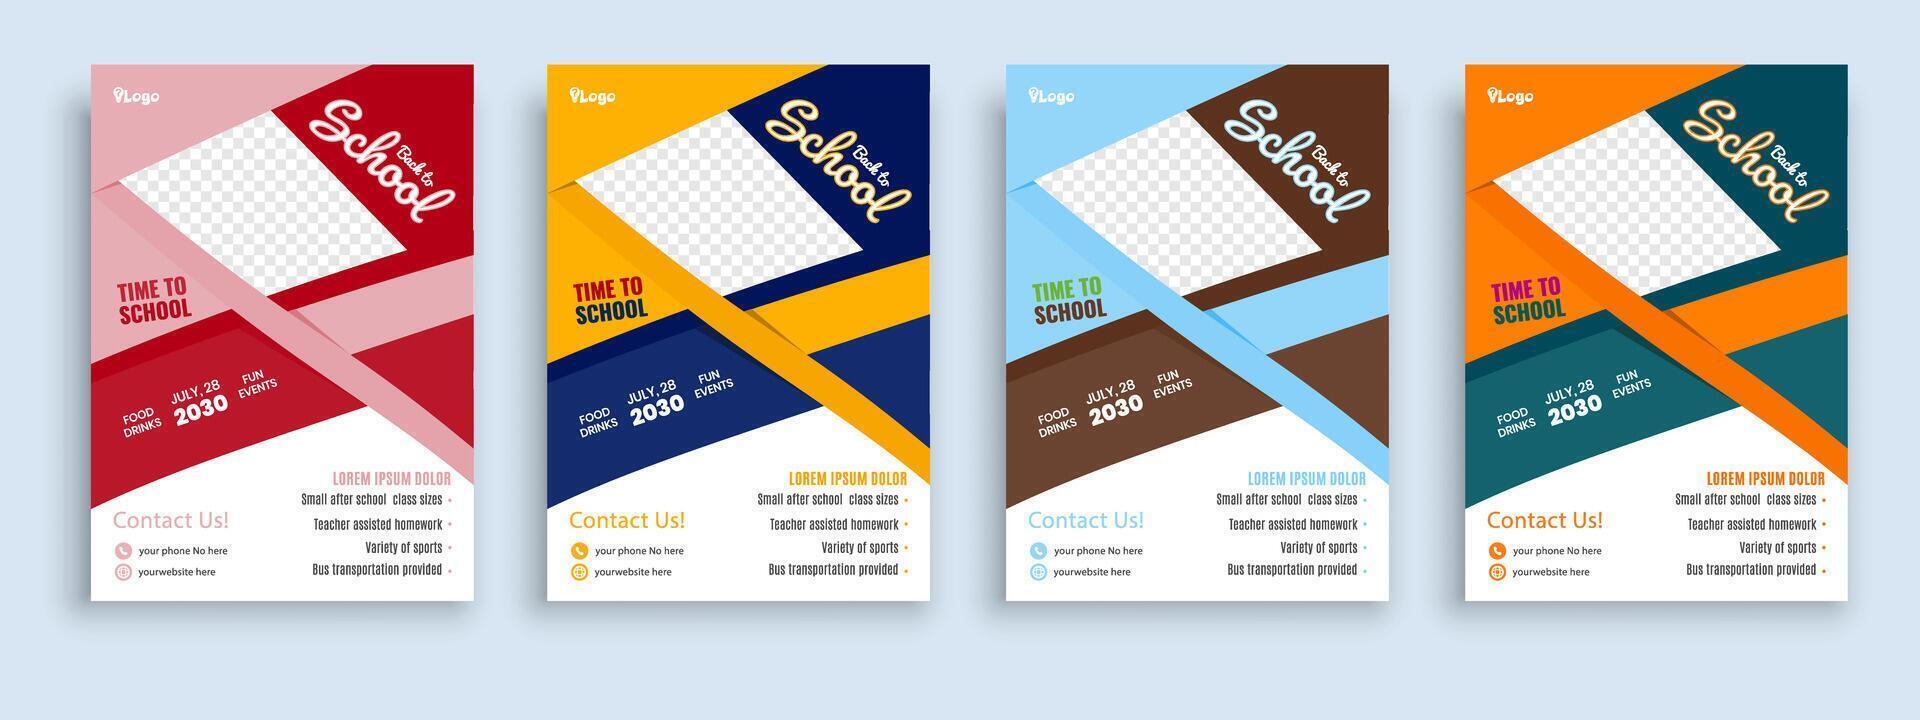 flygblad broschyr omslag mall för barn tillbaka till skola utbildning antagning layout design mall vektor